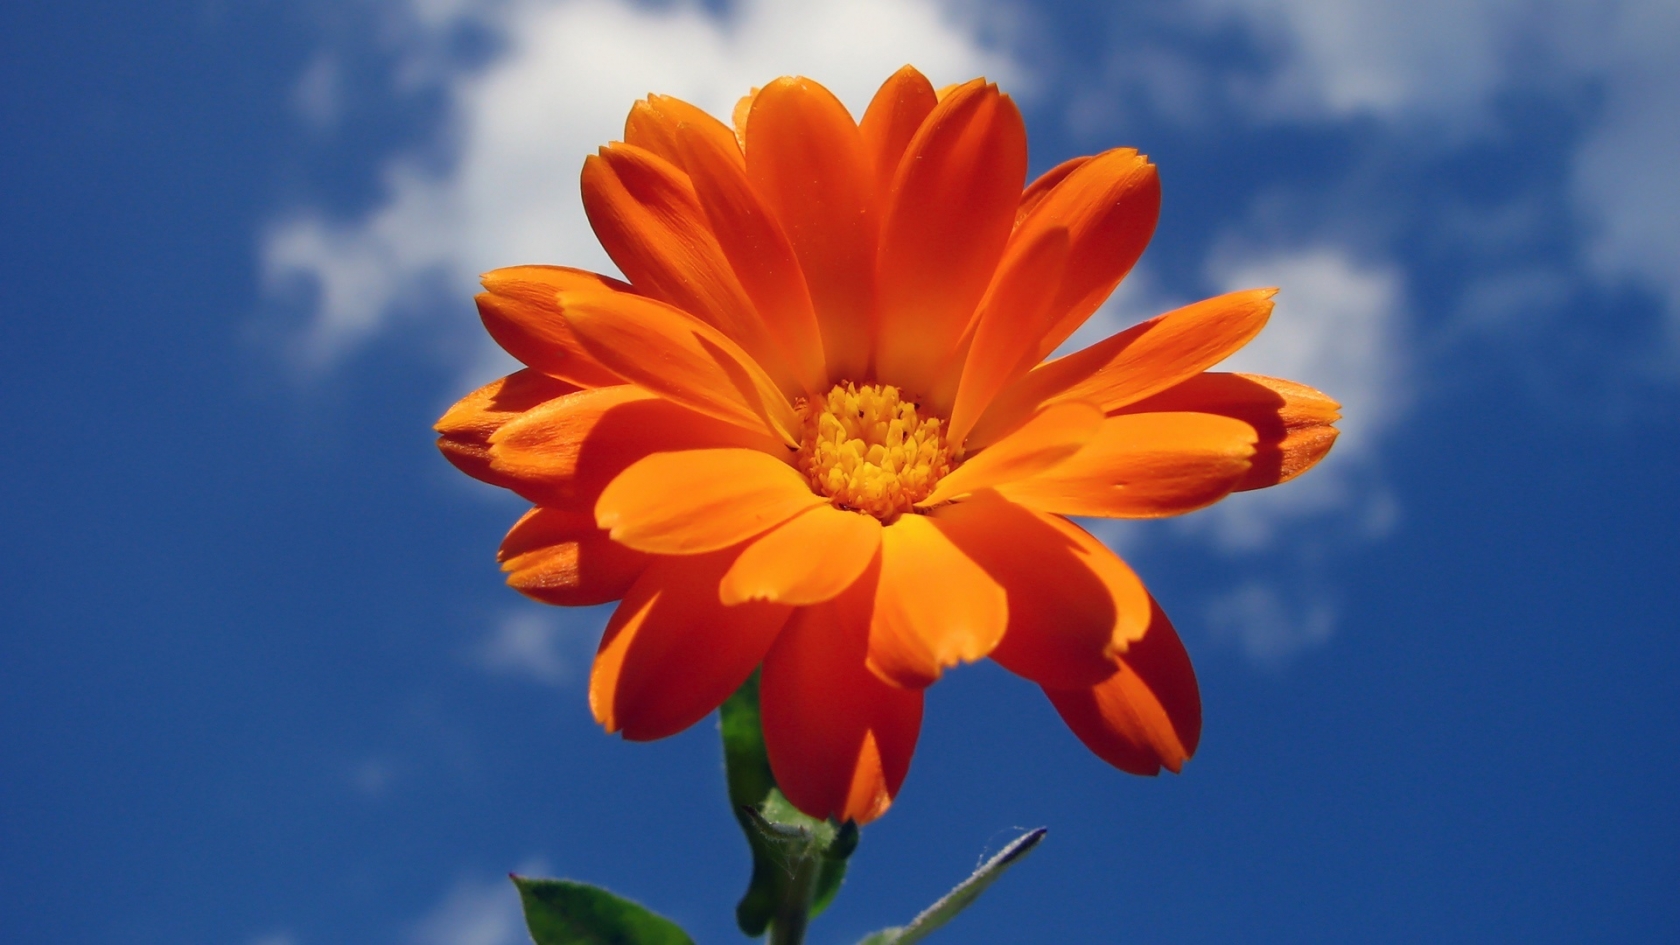 Orange Nice Flower for 1680 x 945 HDTV resolution